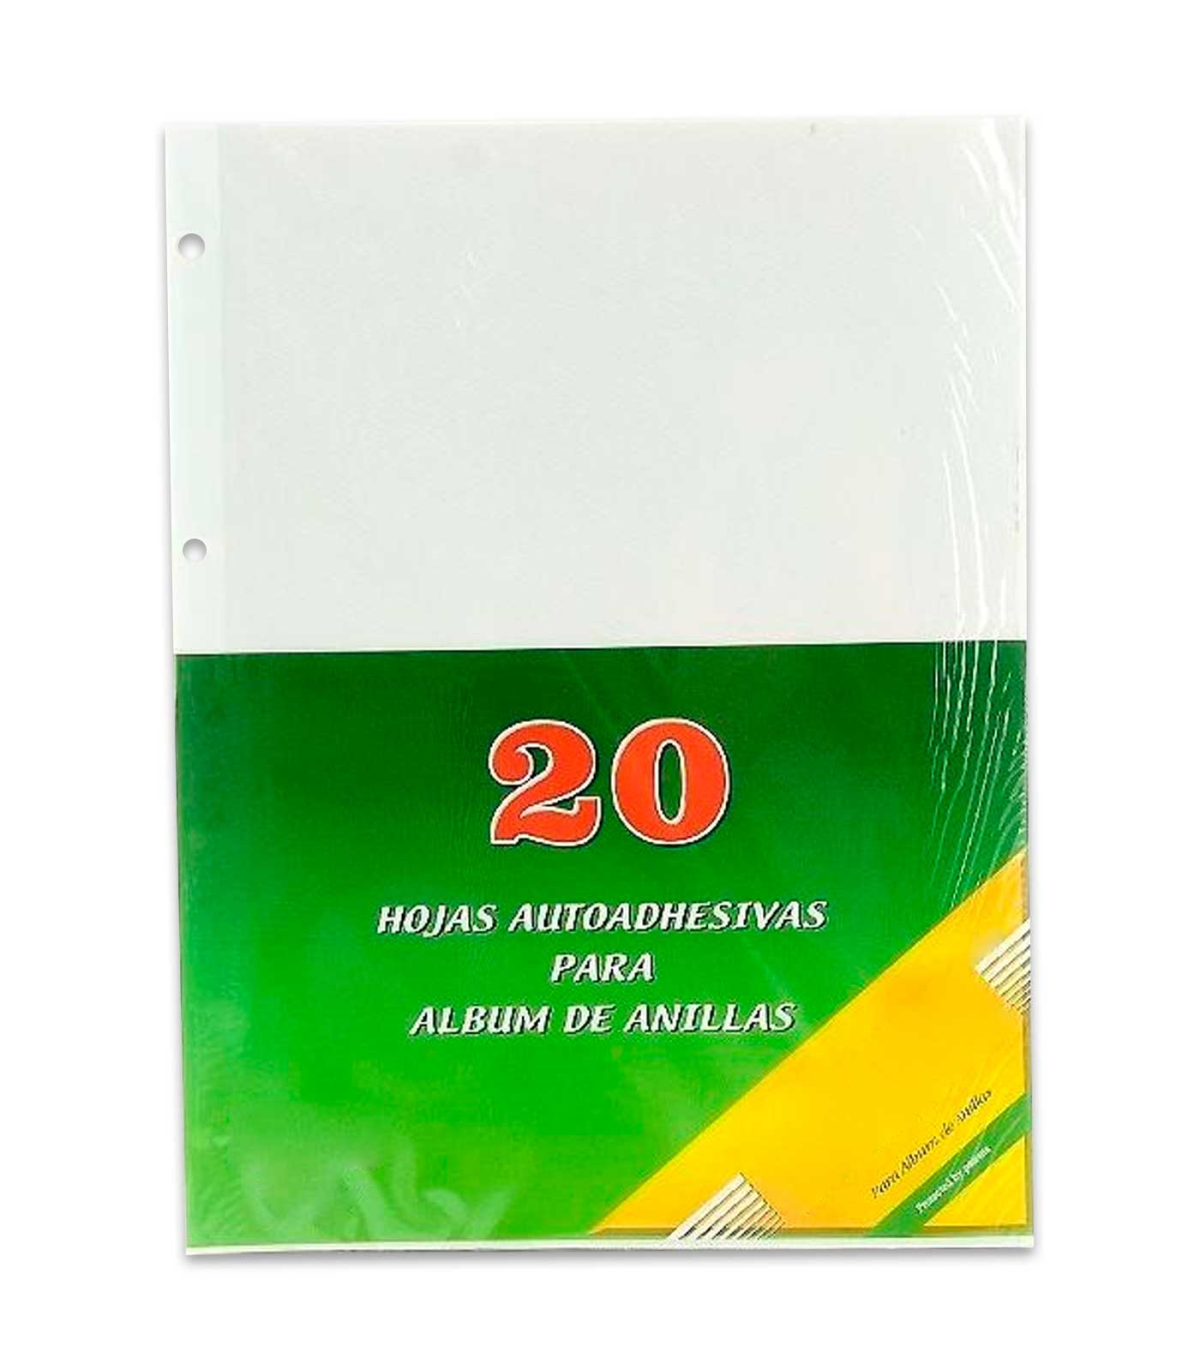 Hofmann Pack de 20 Hojas adhesivas - Album de fotos - Compra al